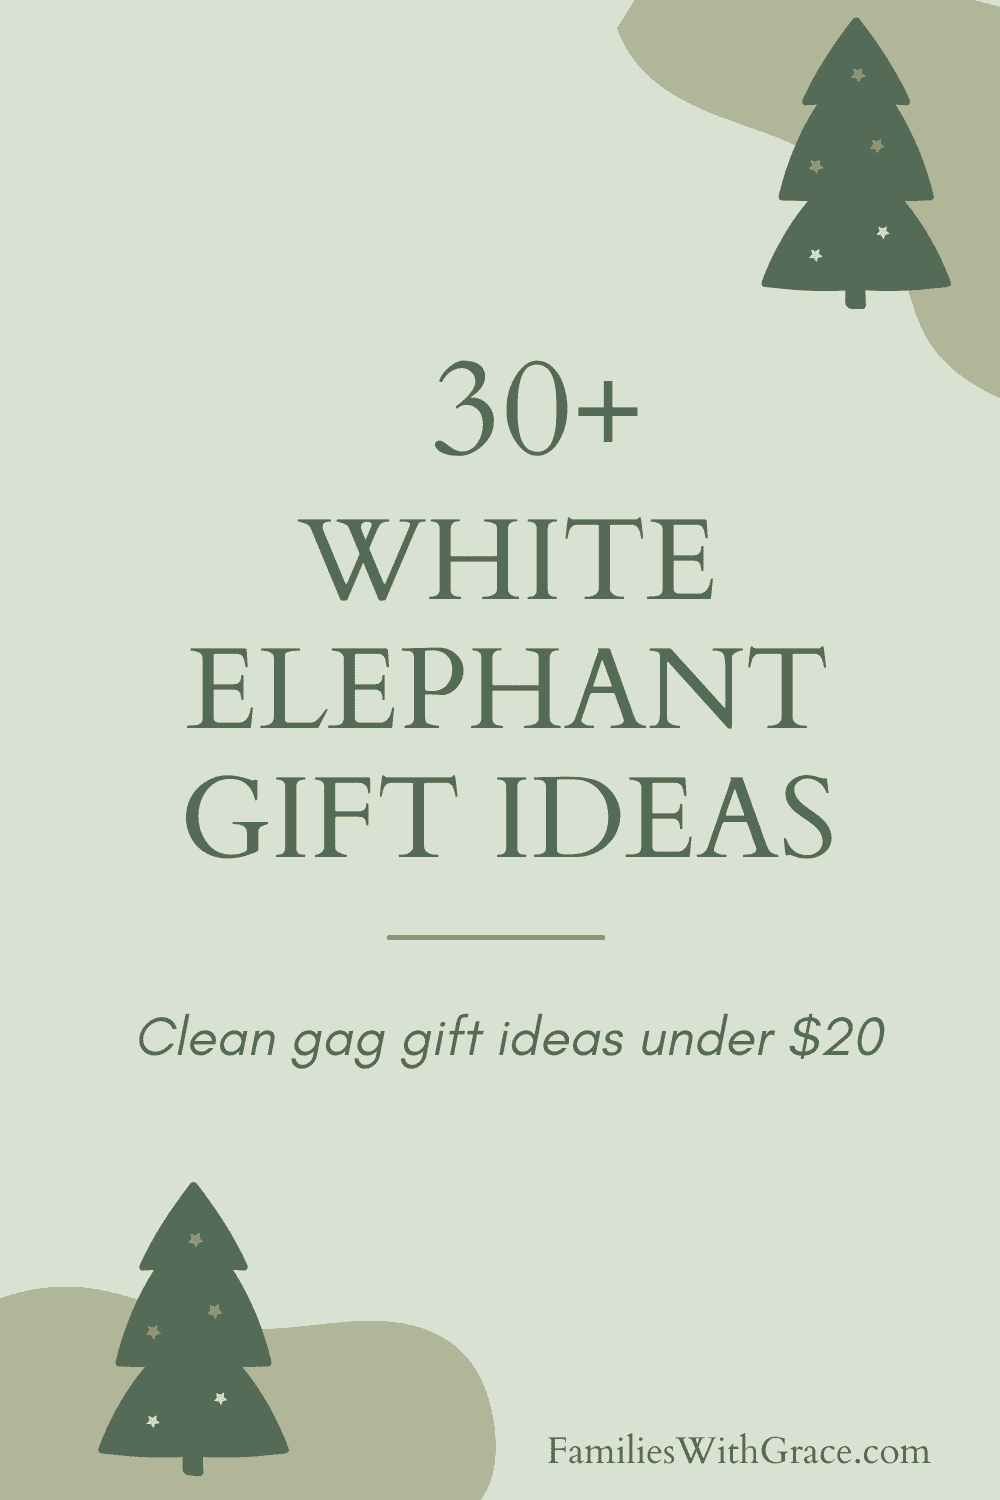 30+ White elephant gift ideas under $20